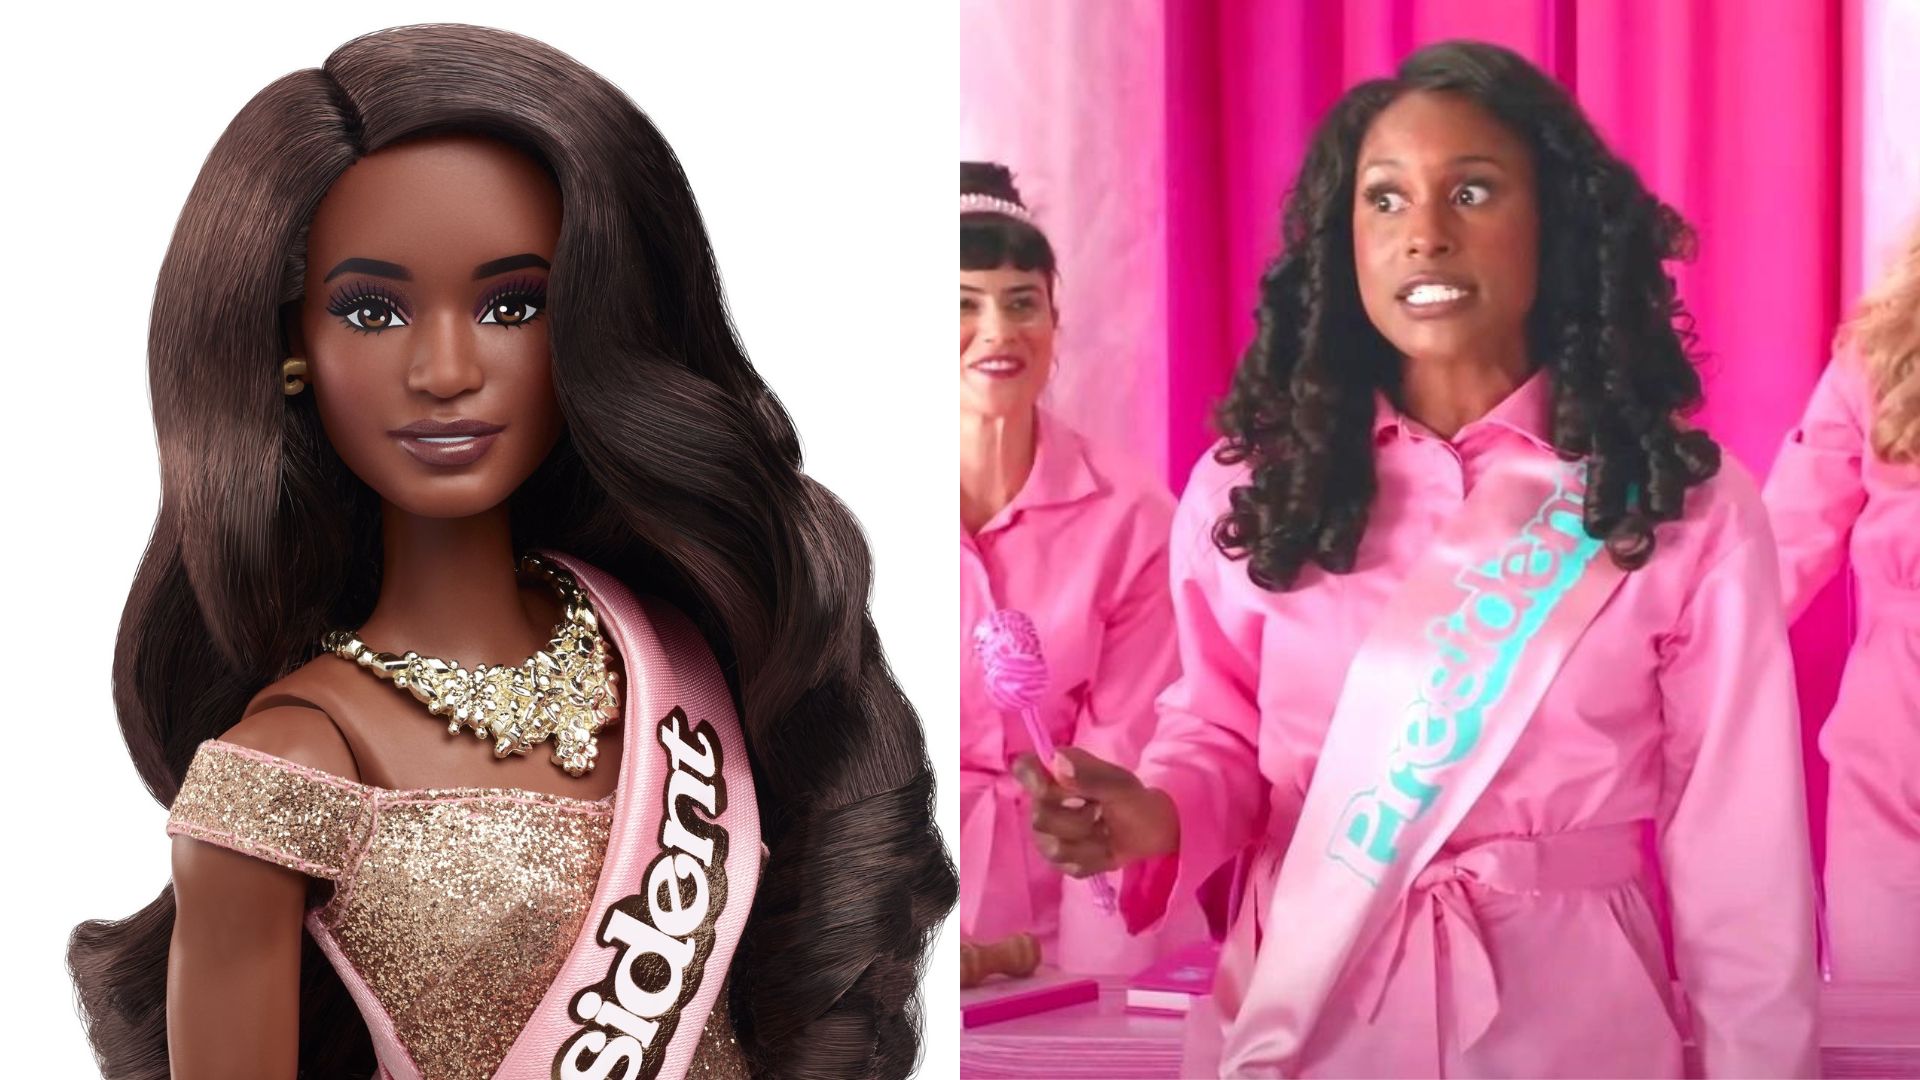 Filme da Barbie: O que esperar do live action?